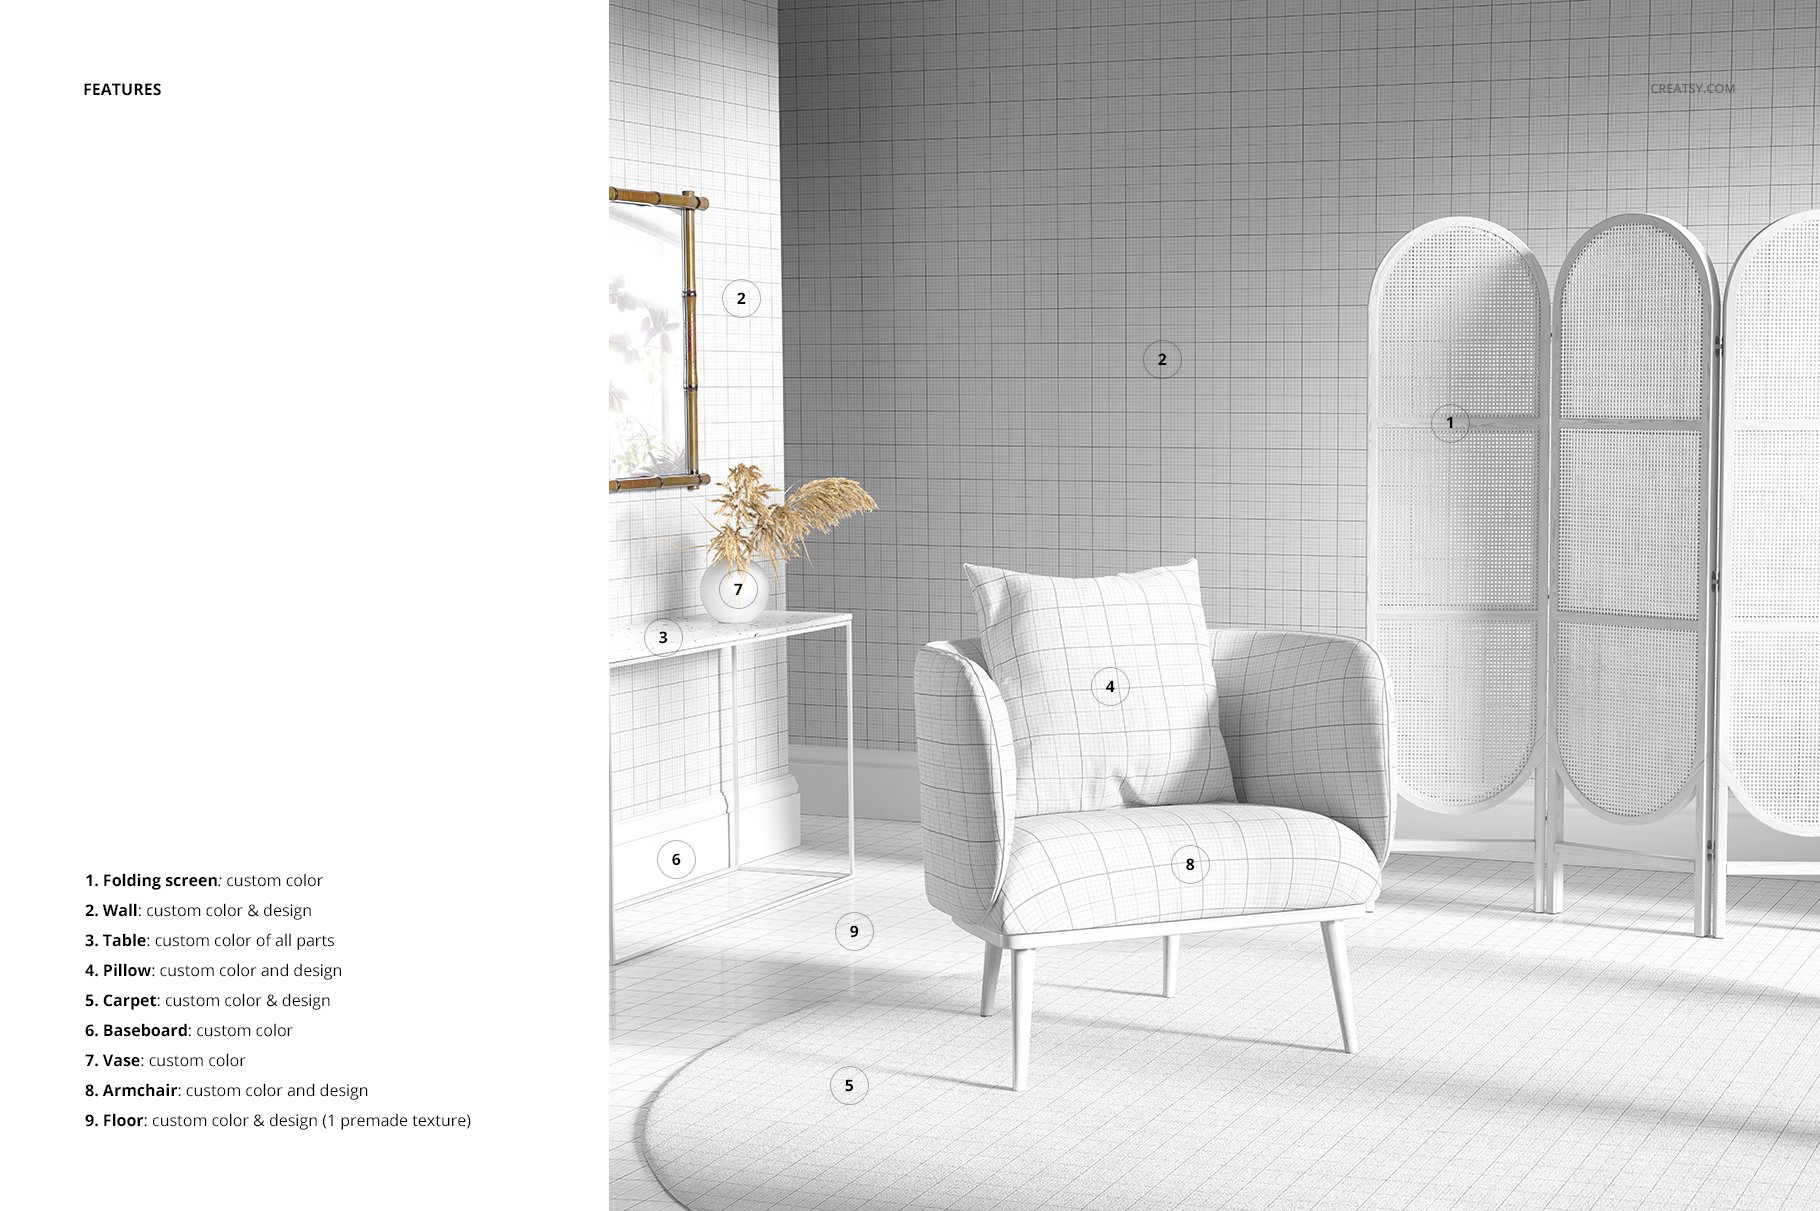 室内场景扶手椅子面料印花图案设计展示PS样机模板